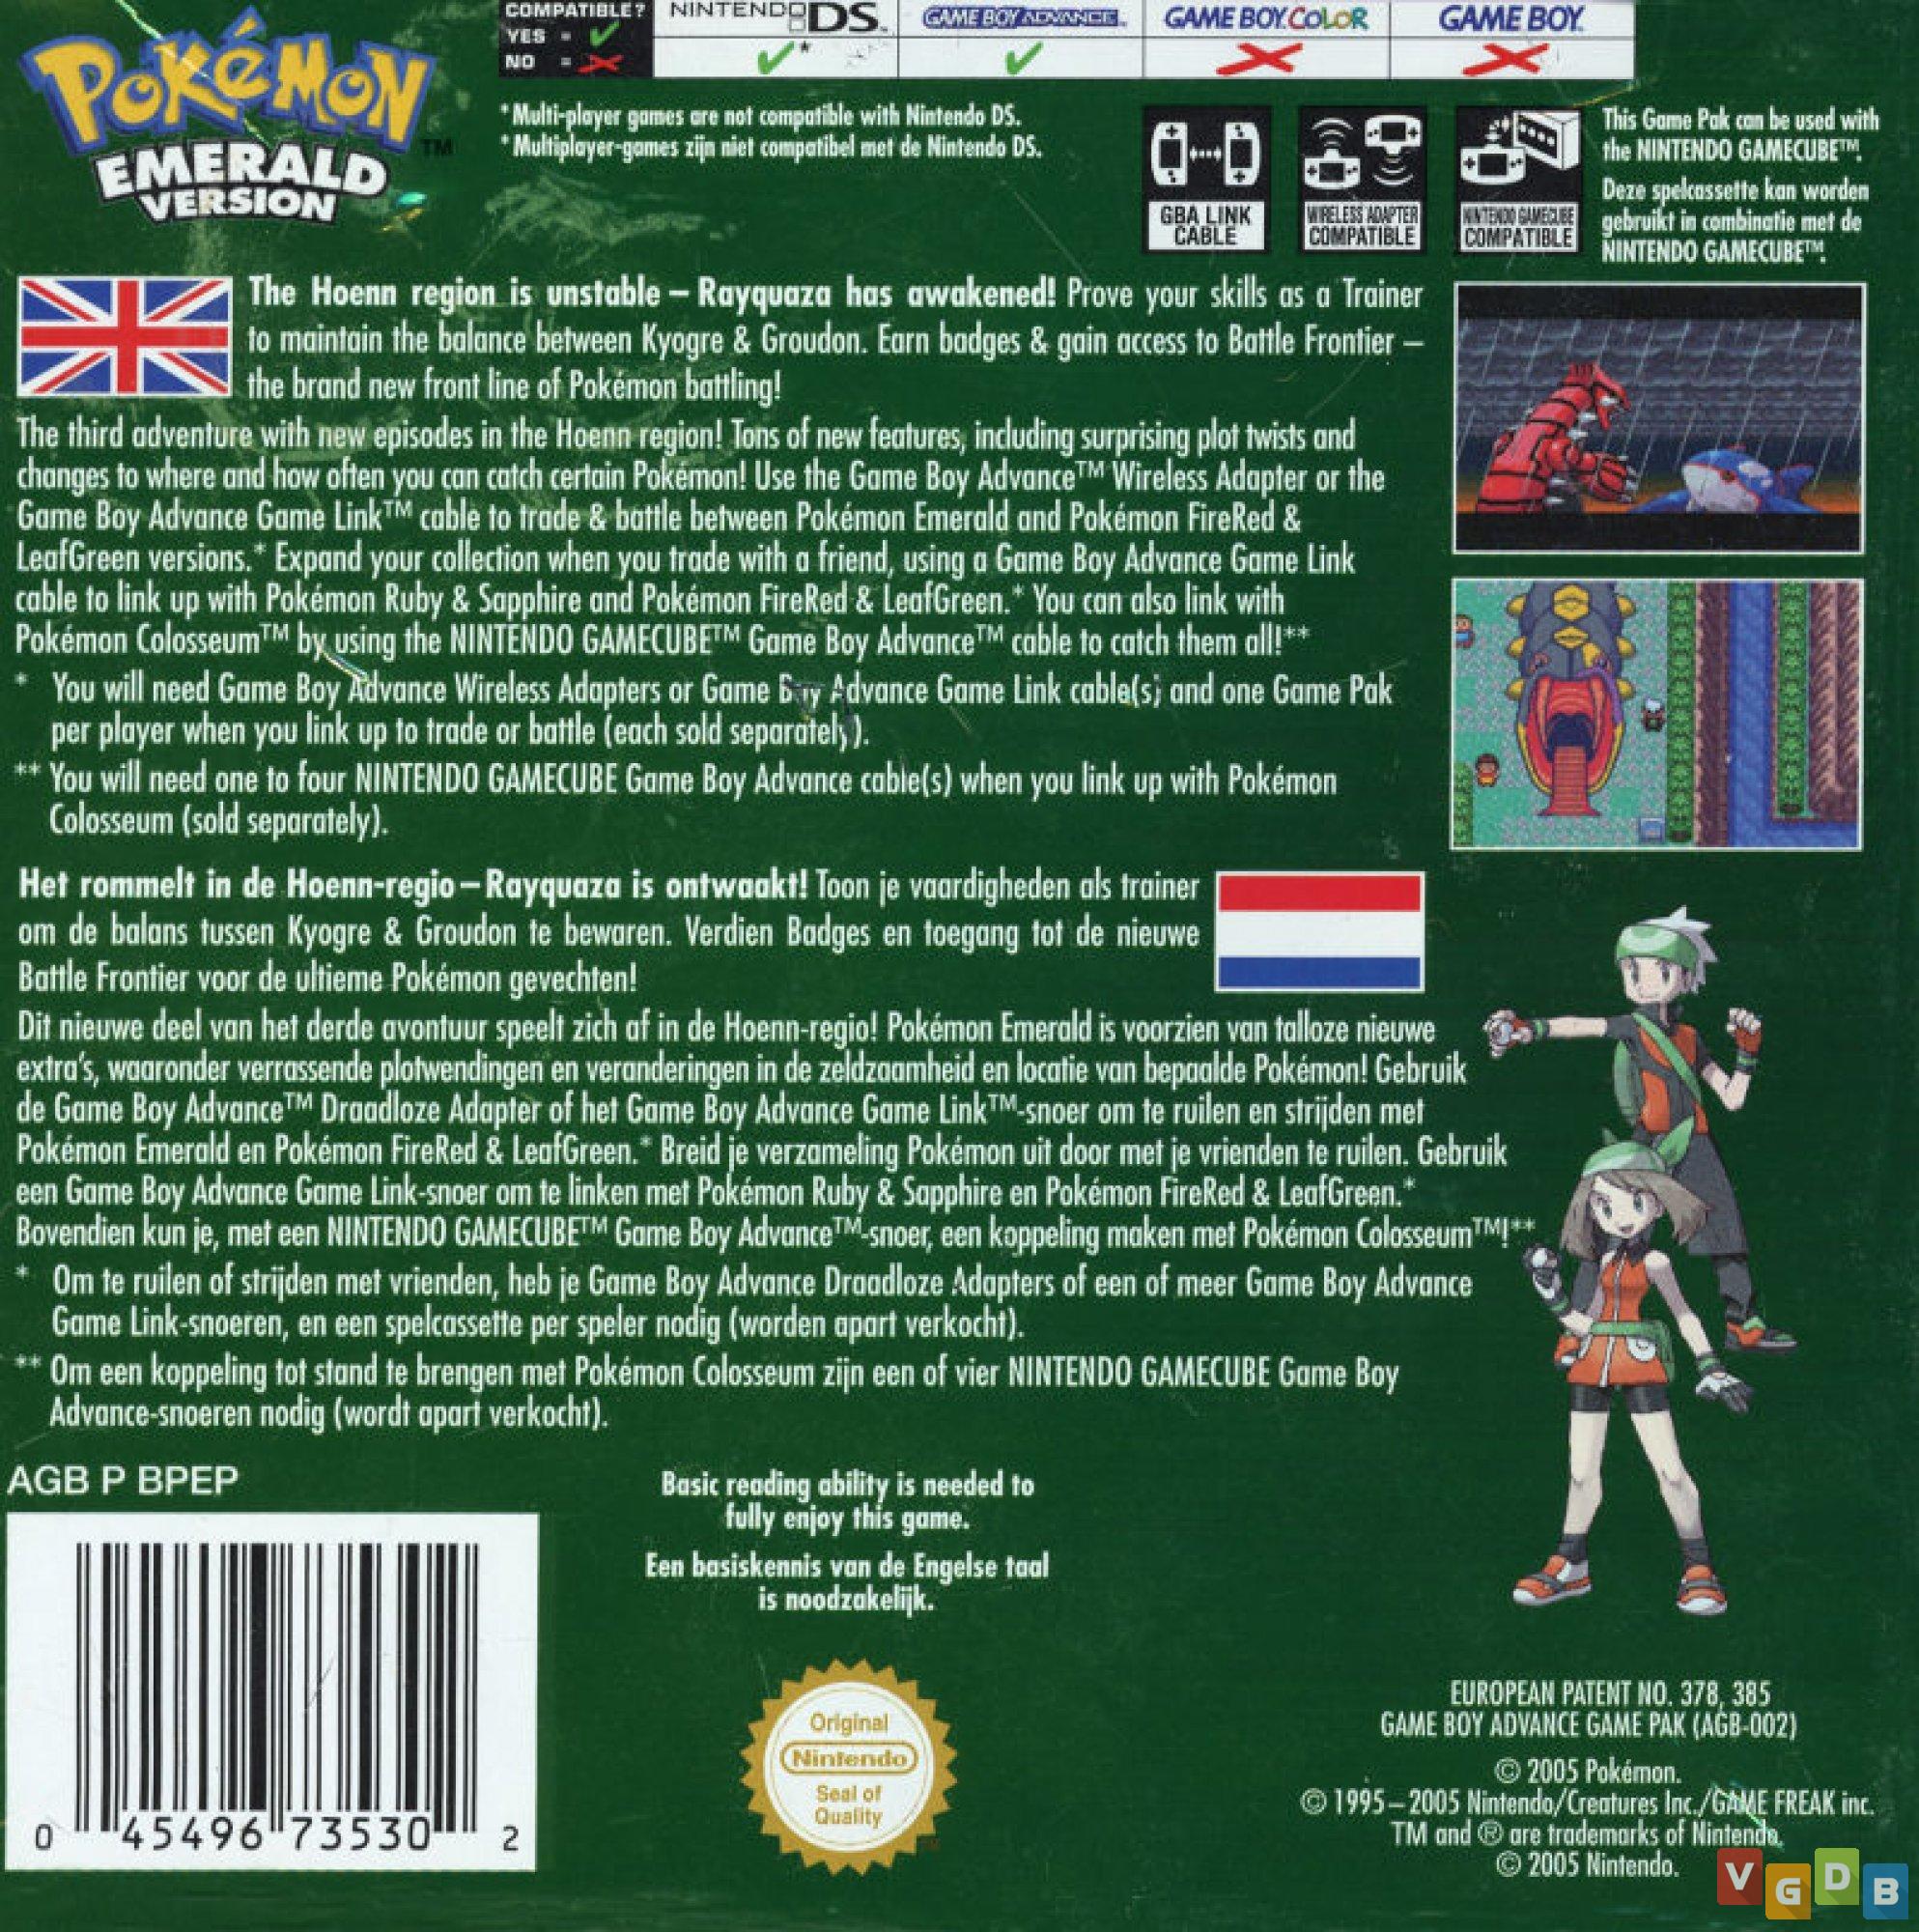 Pokémon - Emerald (GBA) #5 - Batalha contra o Brook, Prof. Cozmo